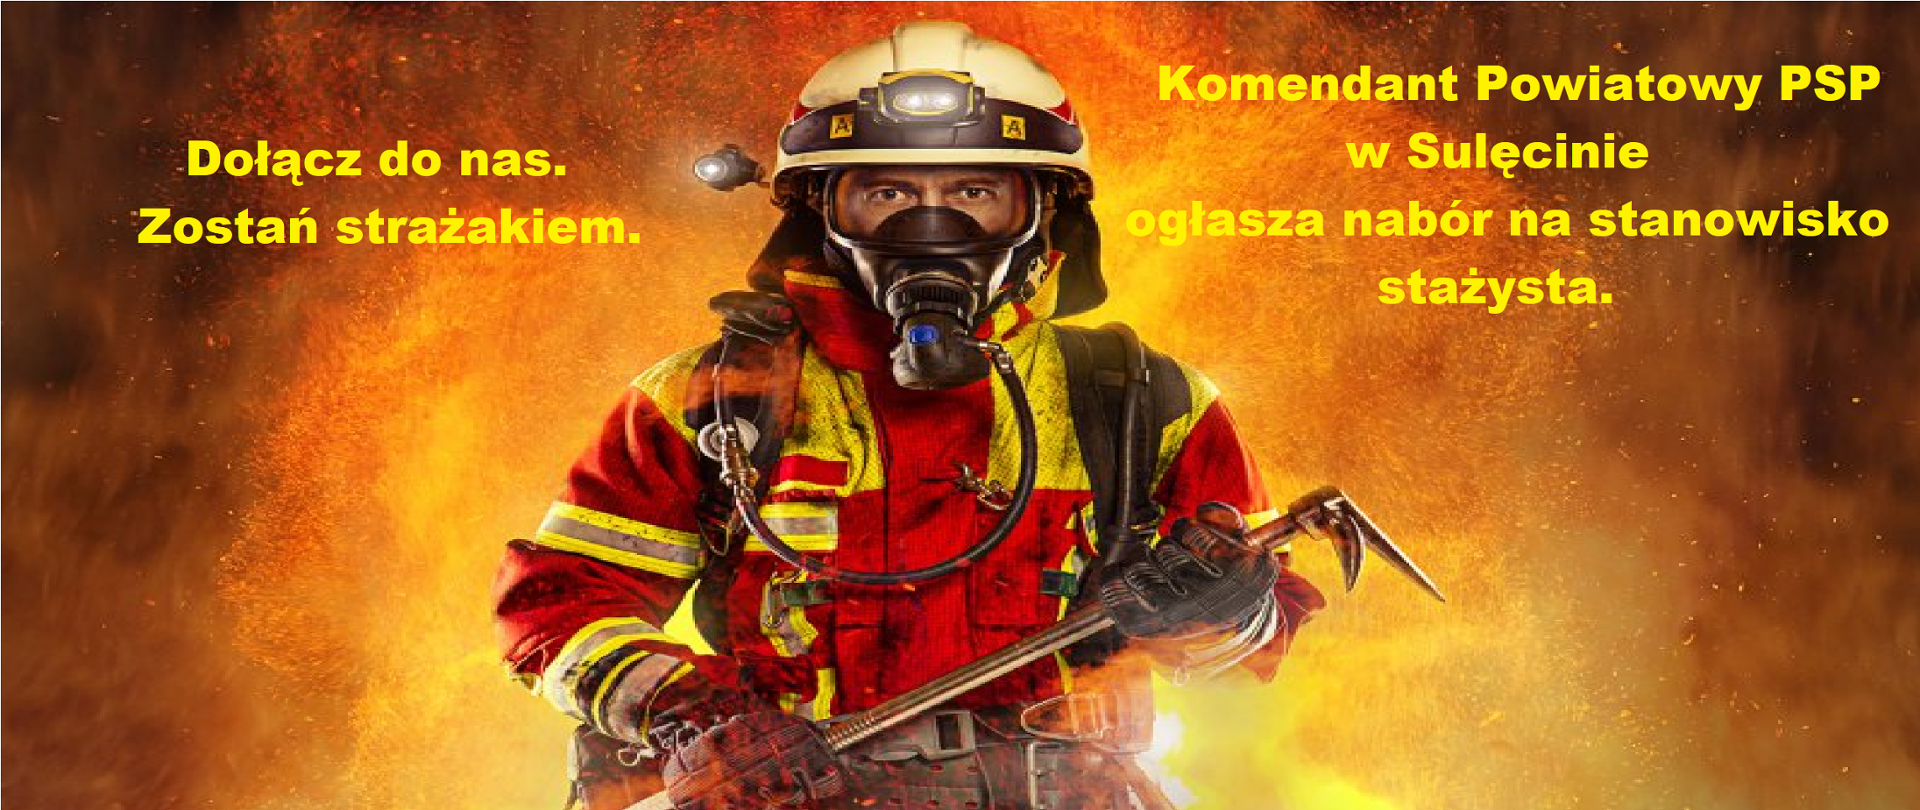 Zdjęcie przedstawia postać strażaka na tle płomieni.